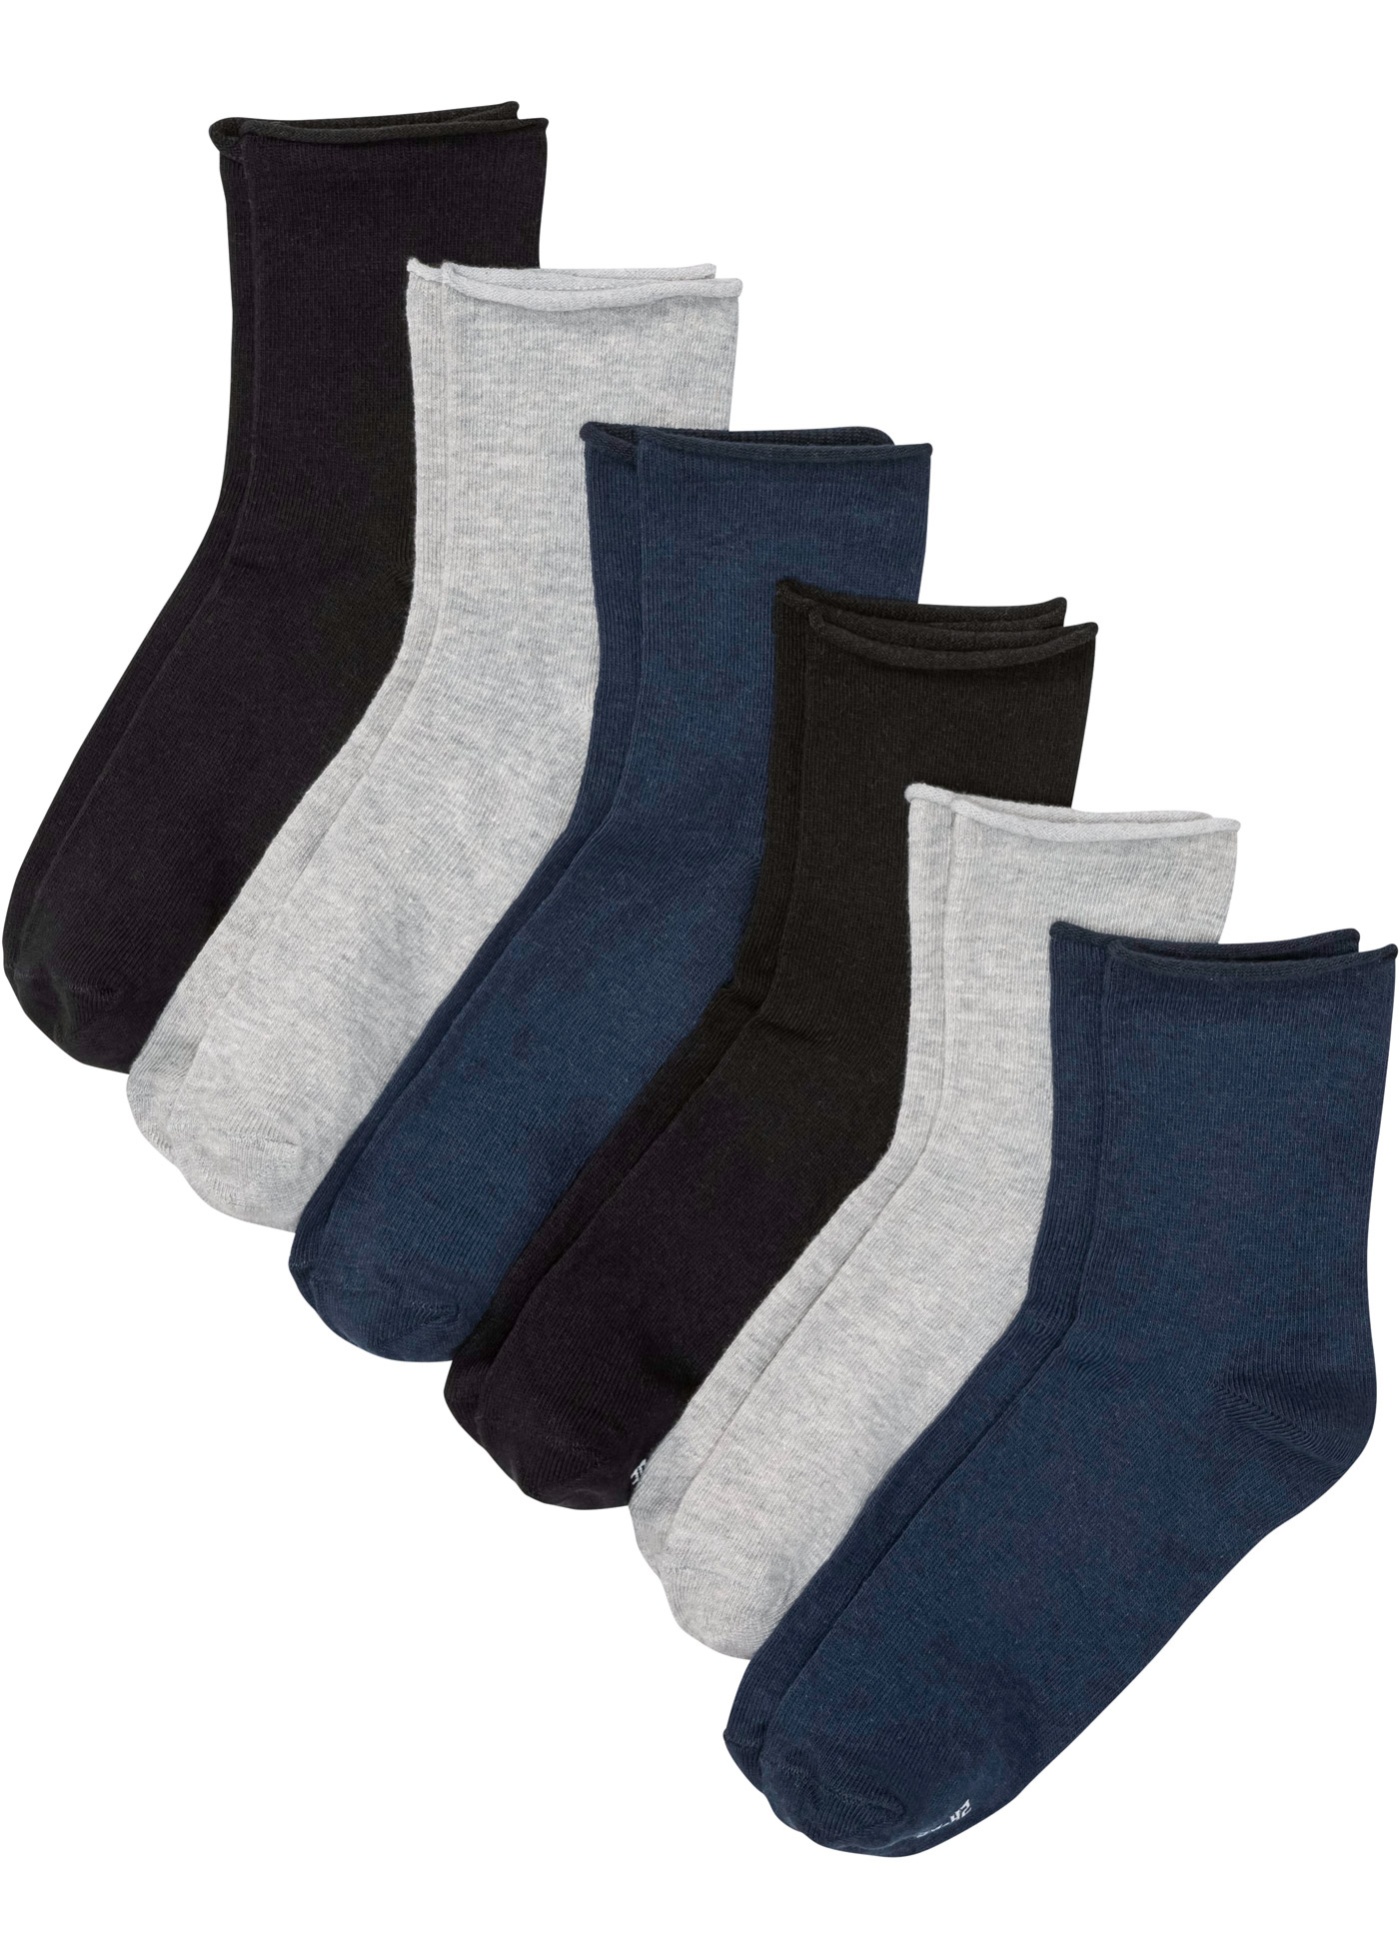 Krátke ponožky so zrolkovaným zakončením (6 ks v balení), s bio bavlnou